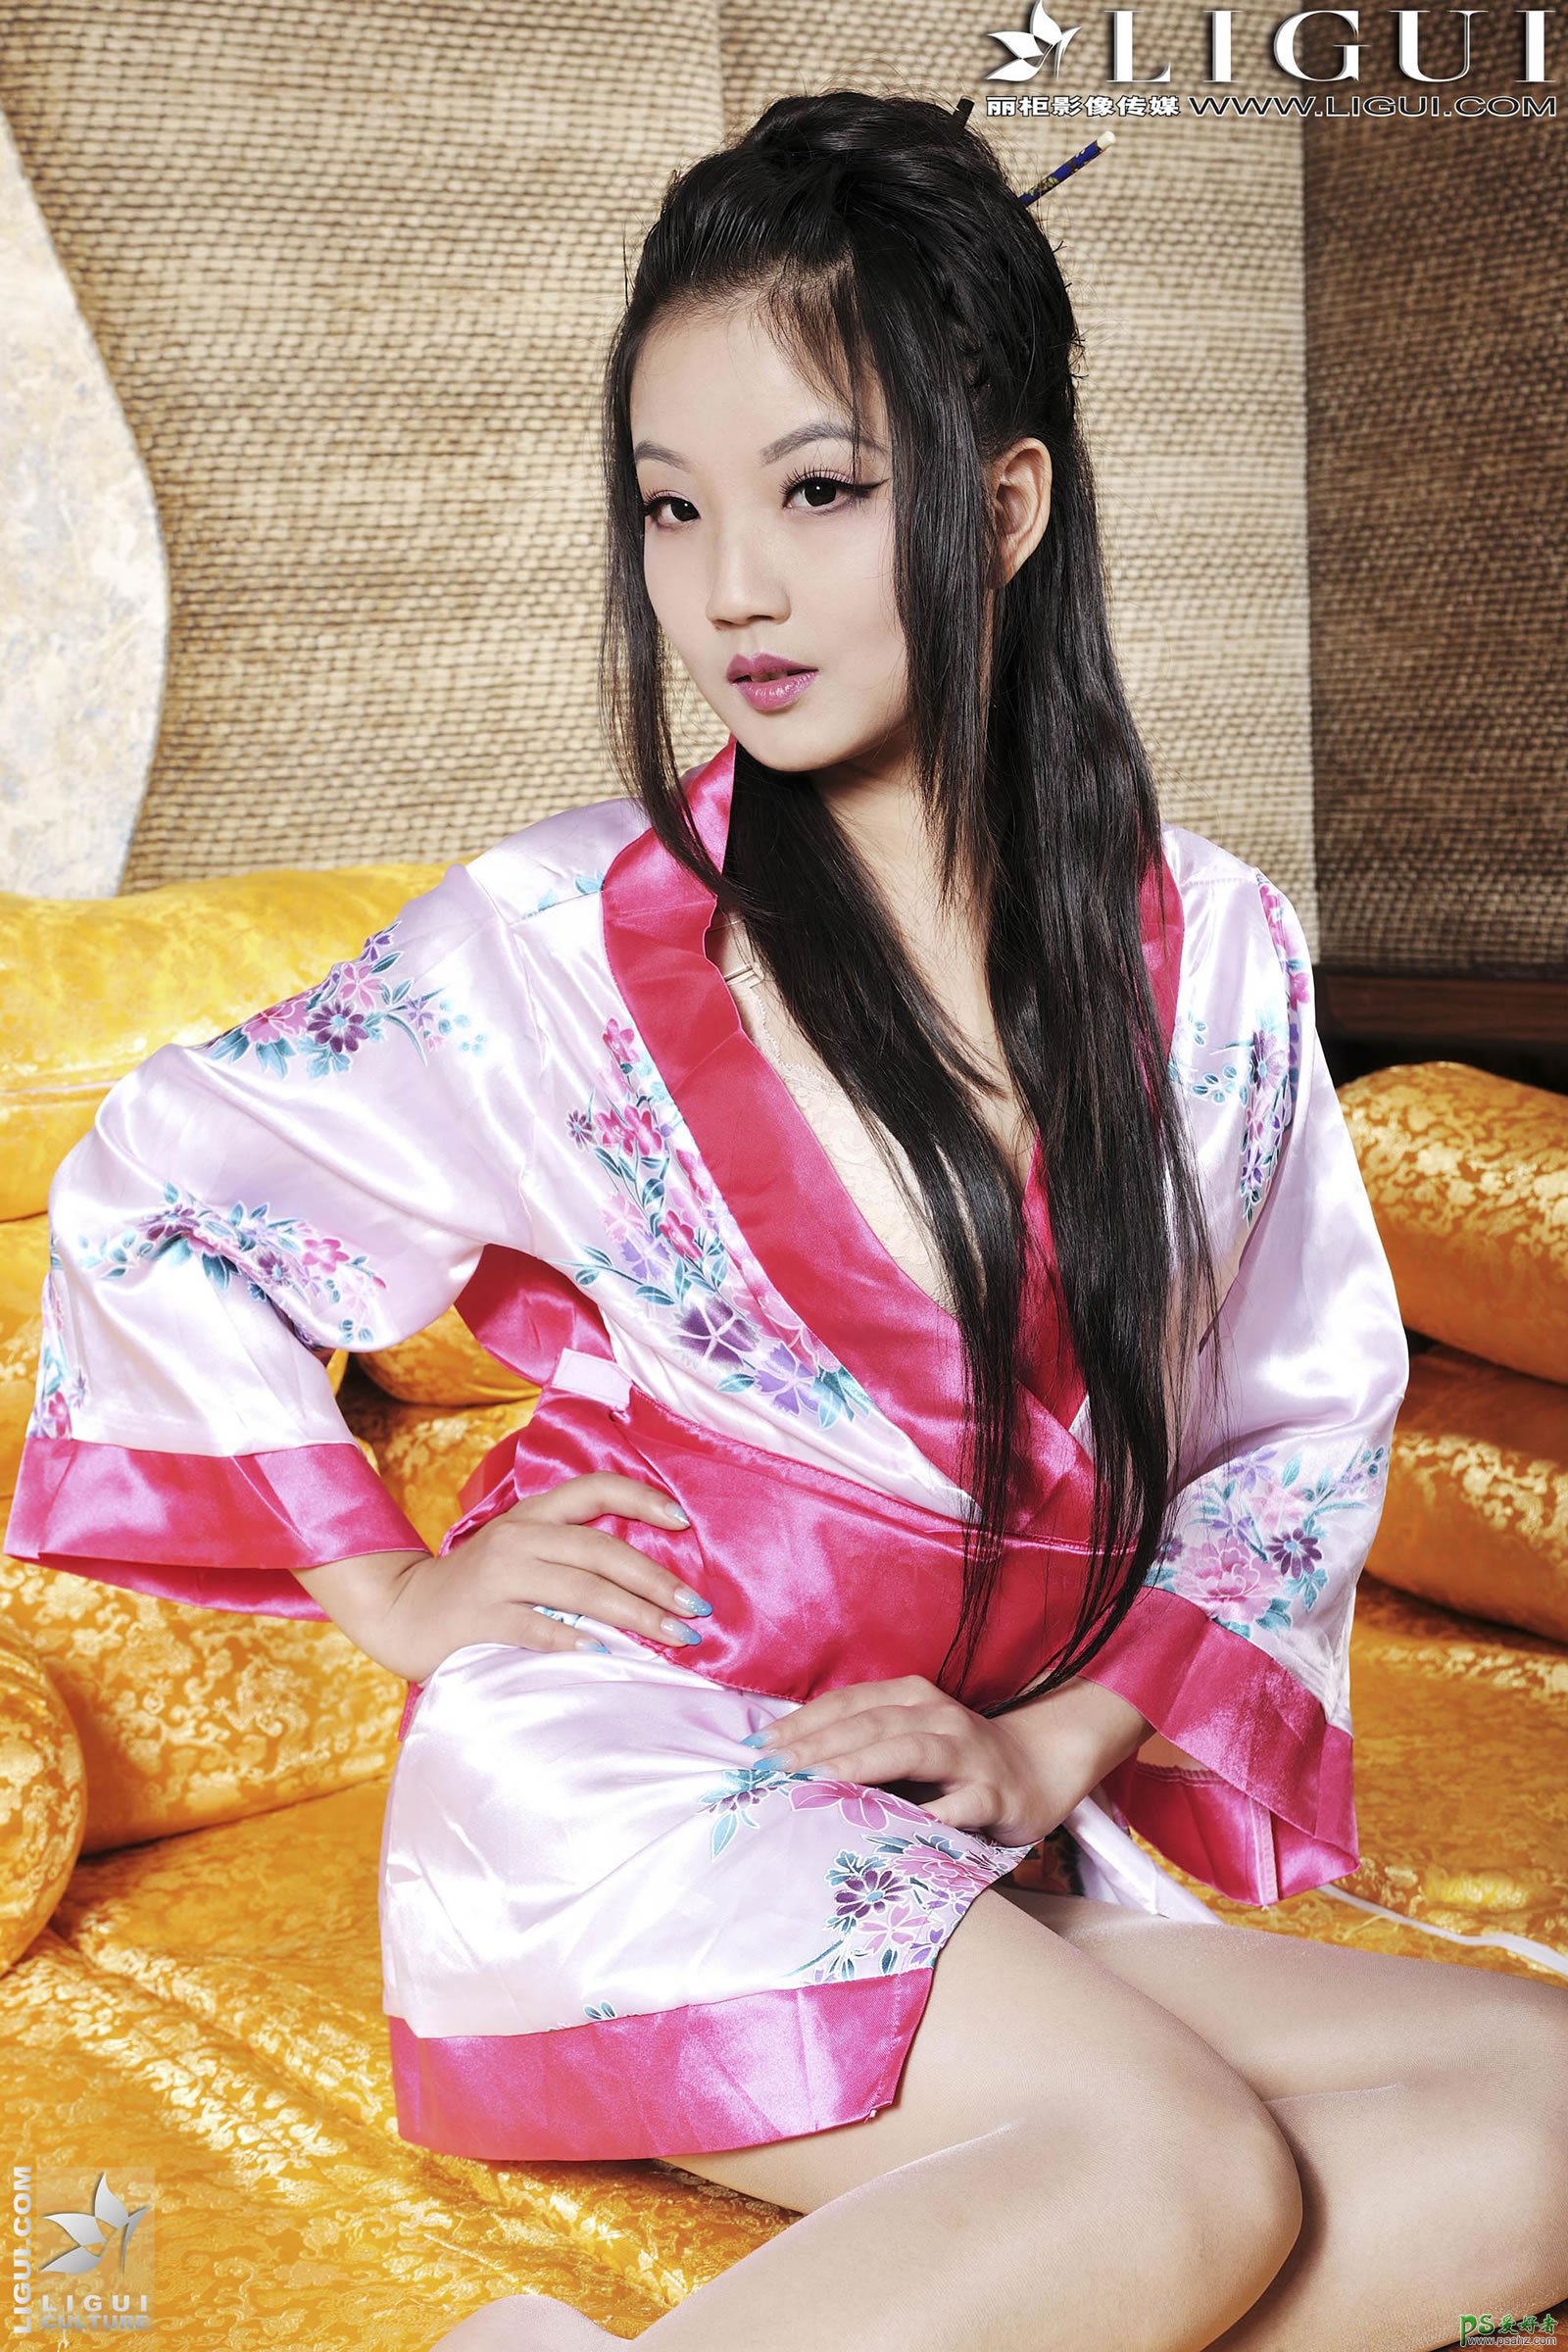 日本性感美女肉丝美足诱人写真-日本极品内衣美女销魂私房照